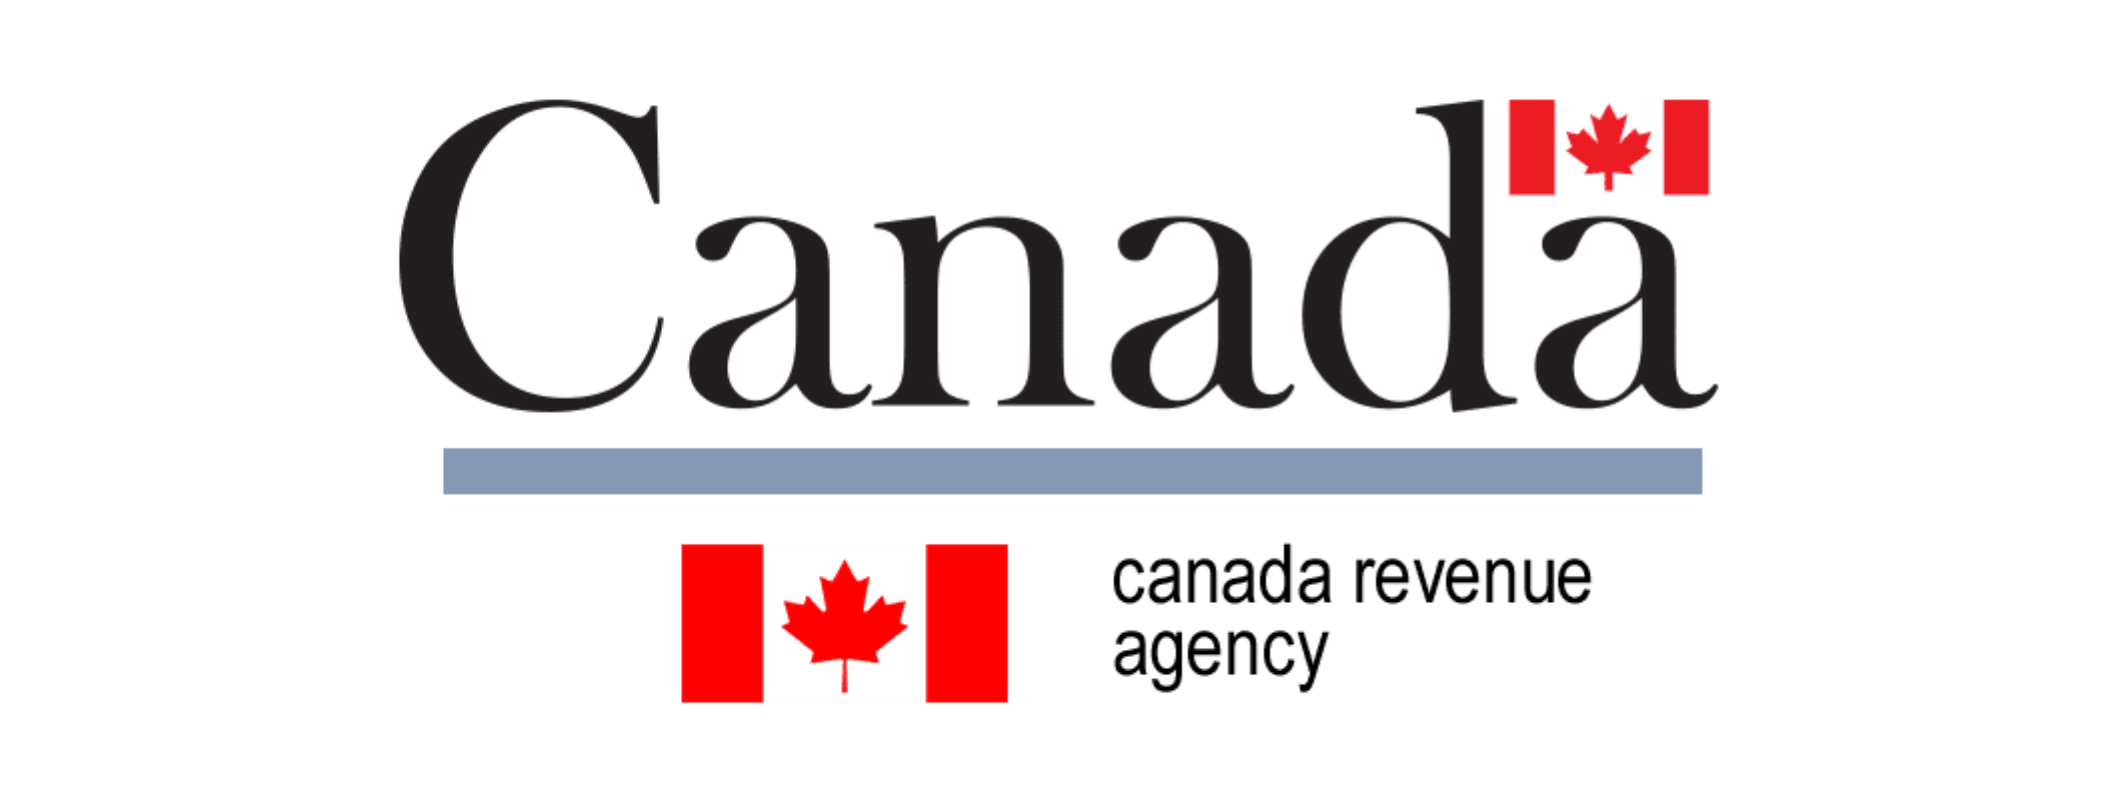 Canada Revenue Agency-2